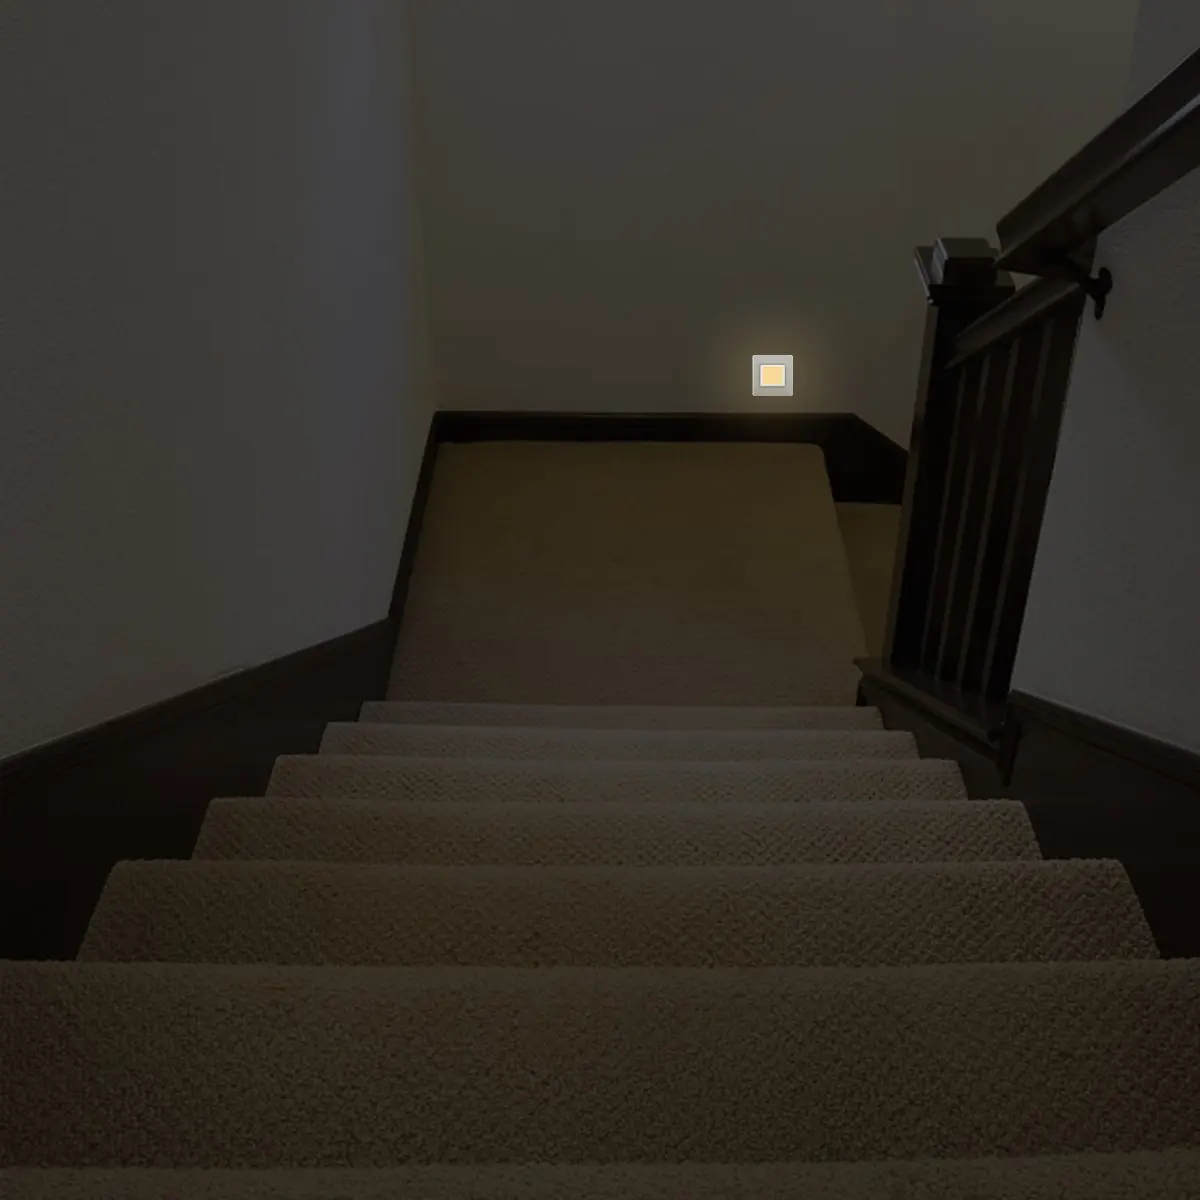 LED Gece Lambası Alacakaranlık Sensörü 0.3 W Sıcak Beyaz 3000K 40lm AB Tak Soket Lamba 230V çocuk Başucu Masa Ev Merdiven Koridor